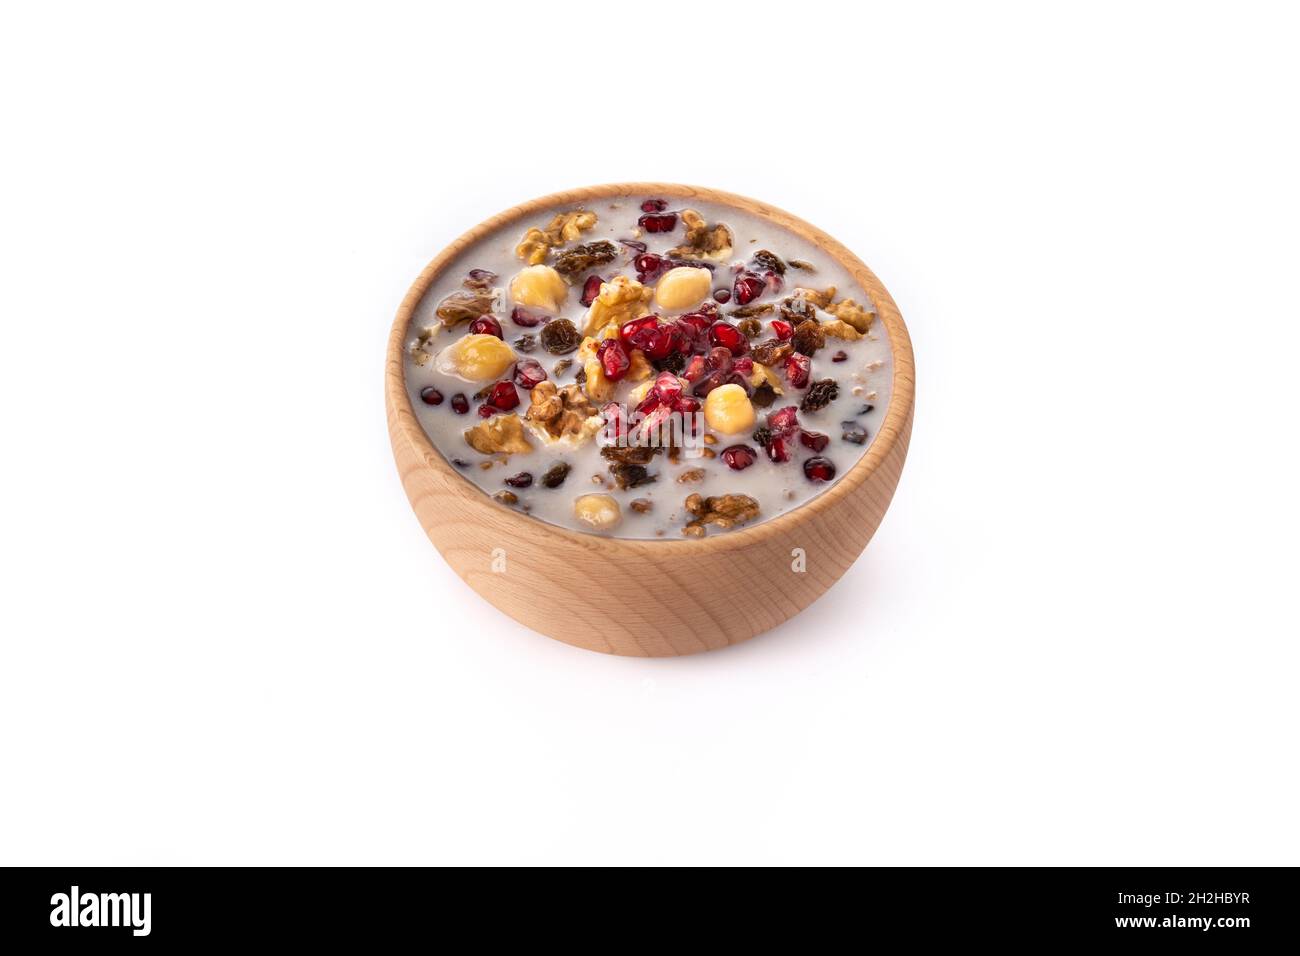 Reispudding. Reispudding Dessert aus Milch, Zucker und Reis auf einem  Steinhintergrund. Türkische Küche Delikatessen. Nahaufnahme Stockfotografie  - Alamy